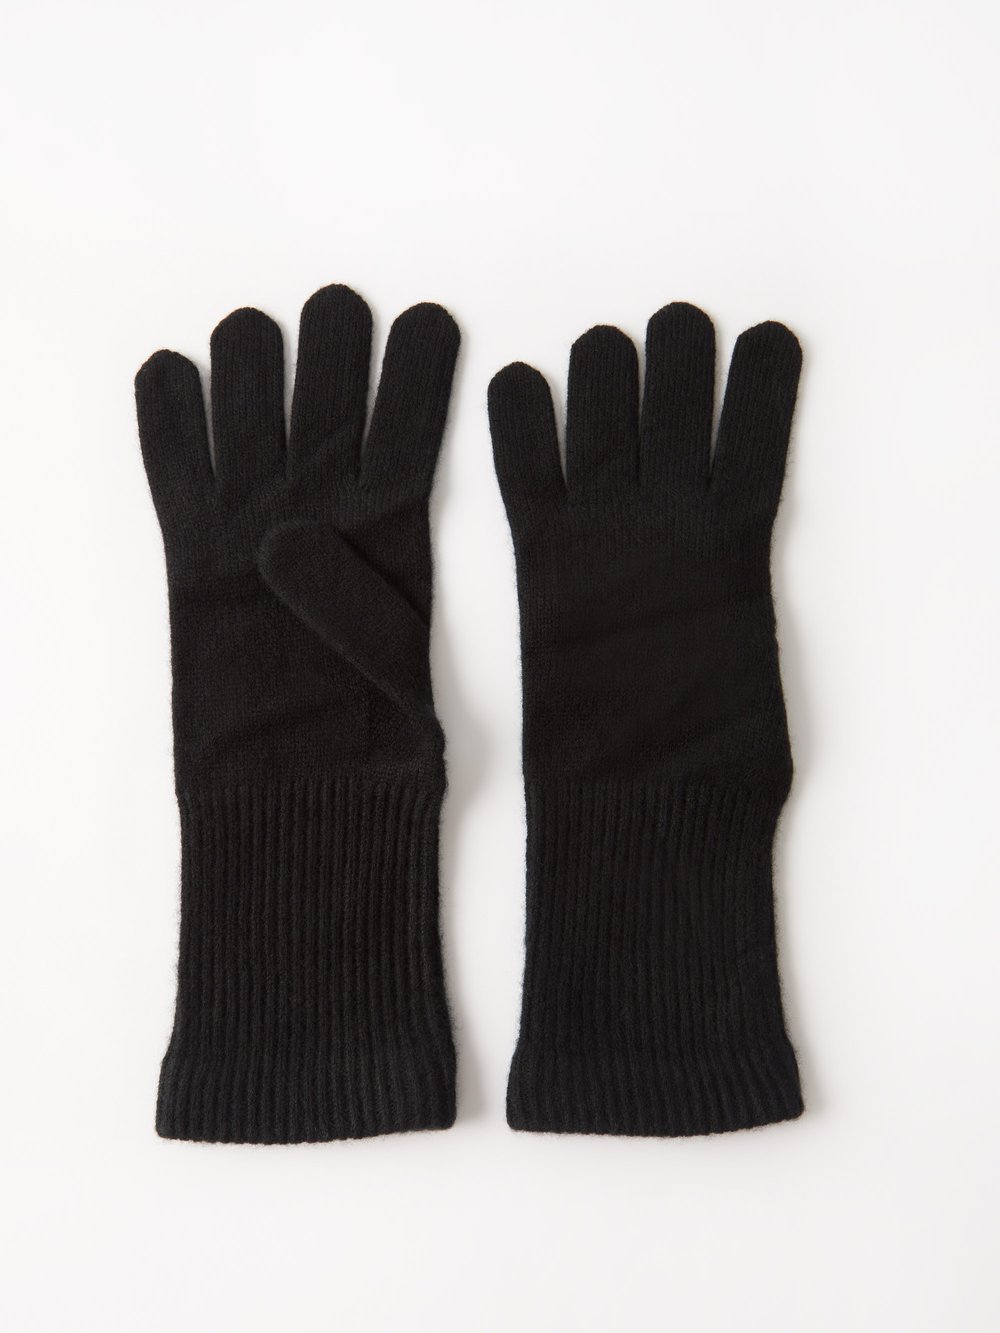 Кашемировые перчатки whitewood в рубчик. Arch4, черный